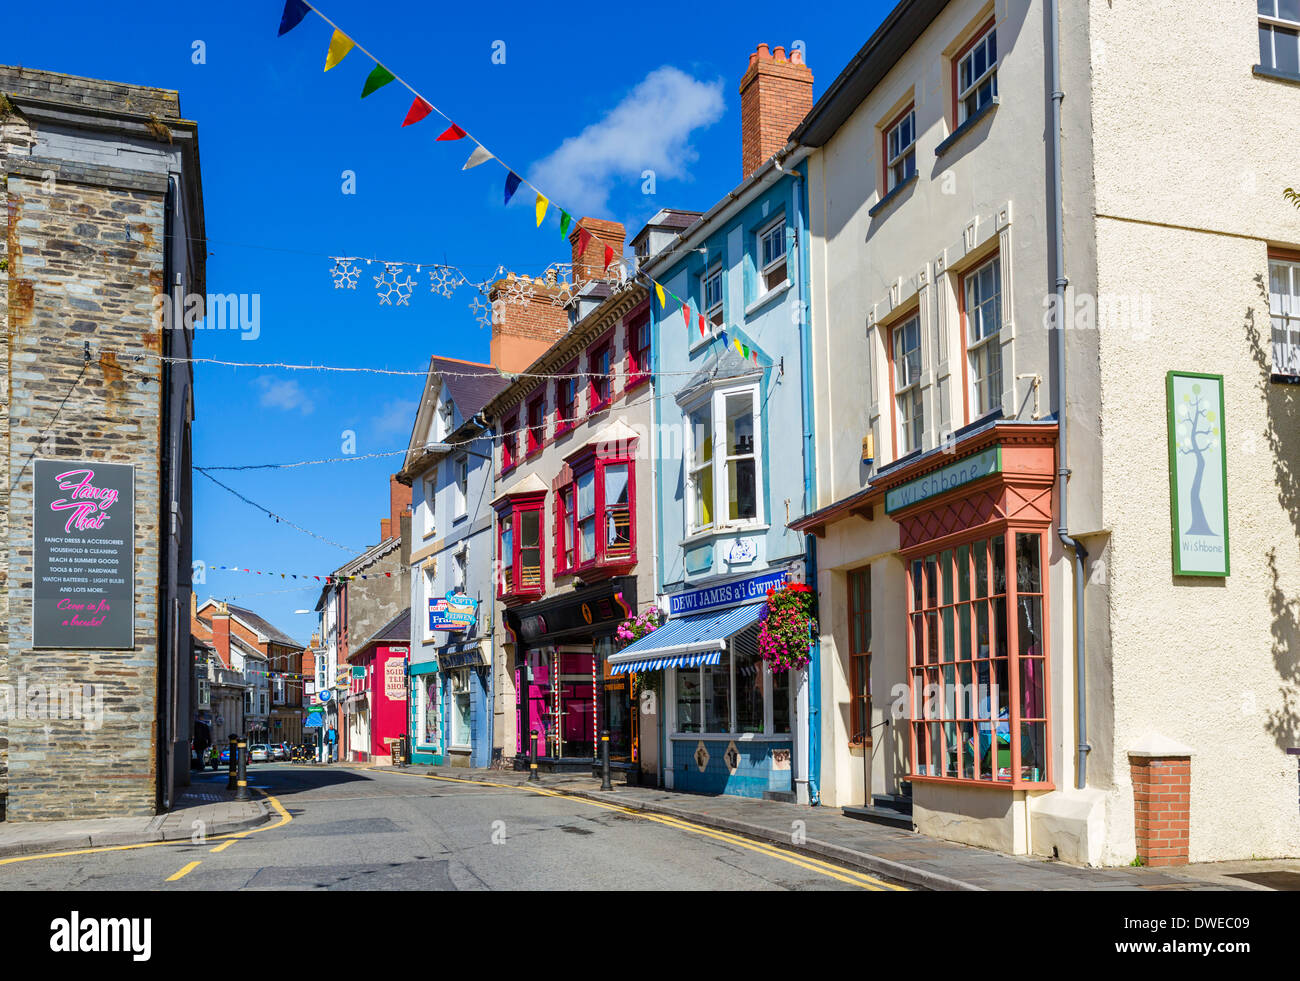 Boutiques sur la rue principale, Cardigan, Ceredigion, pays de Galles, Royaume-Uni Banque D'Images